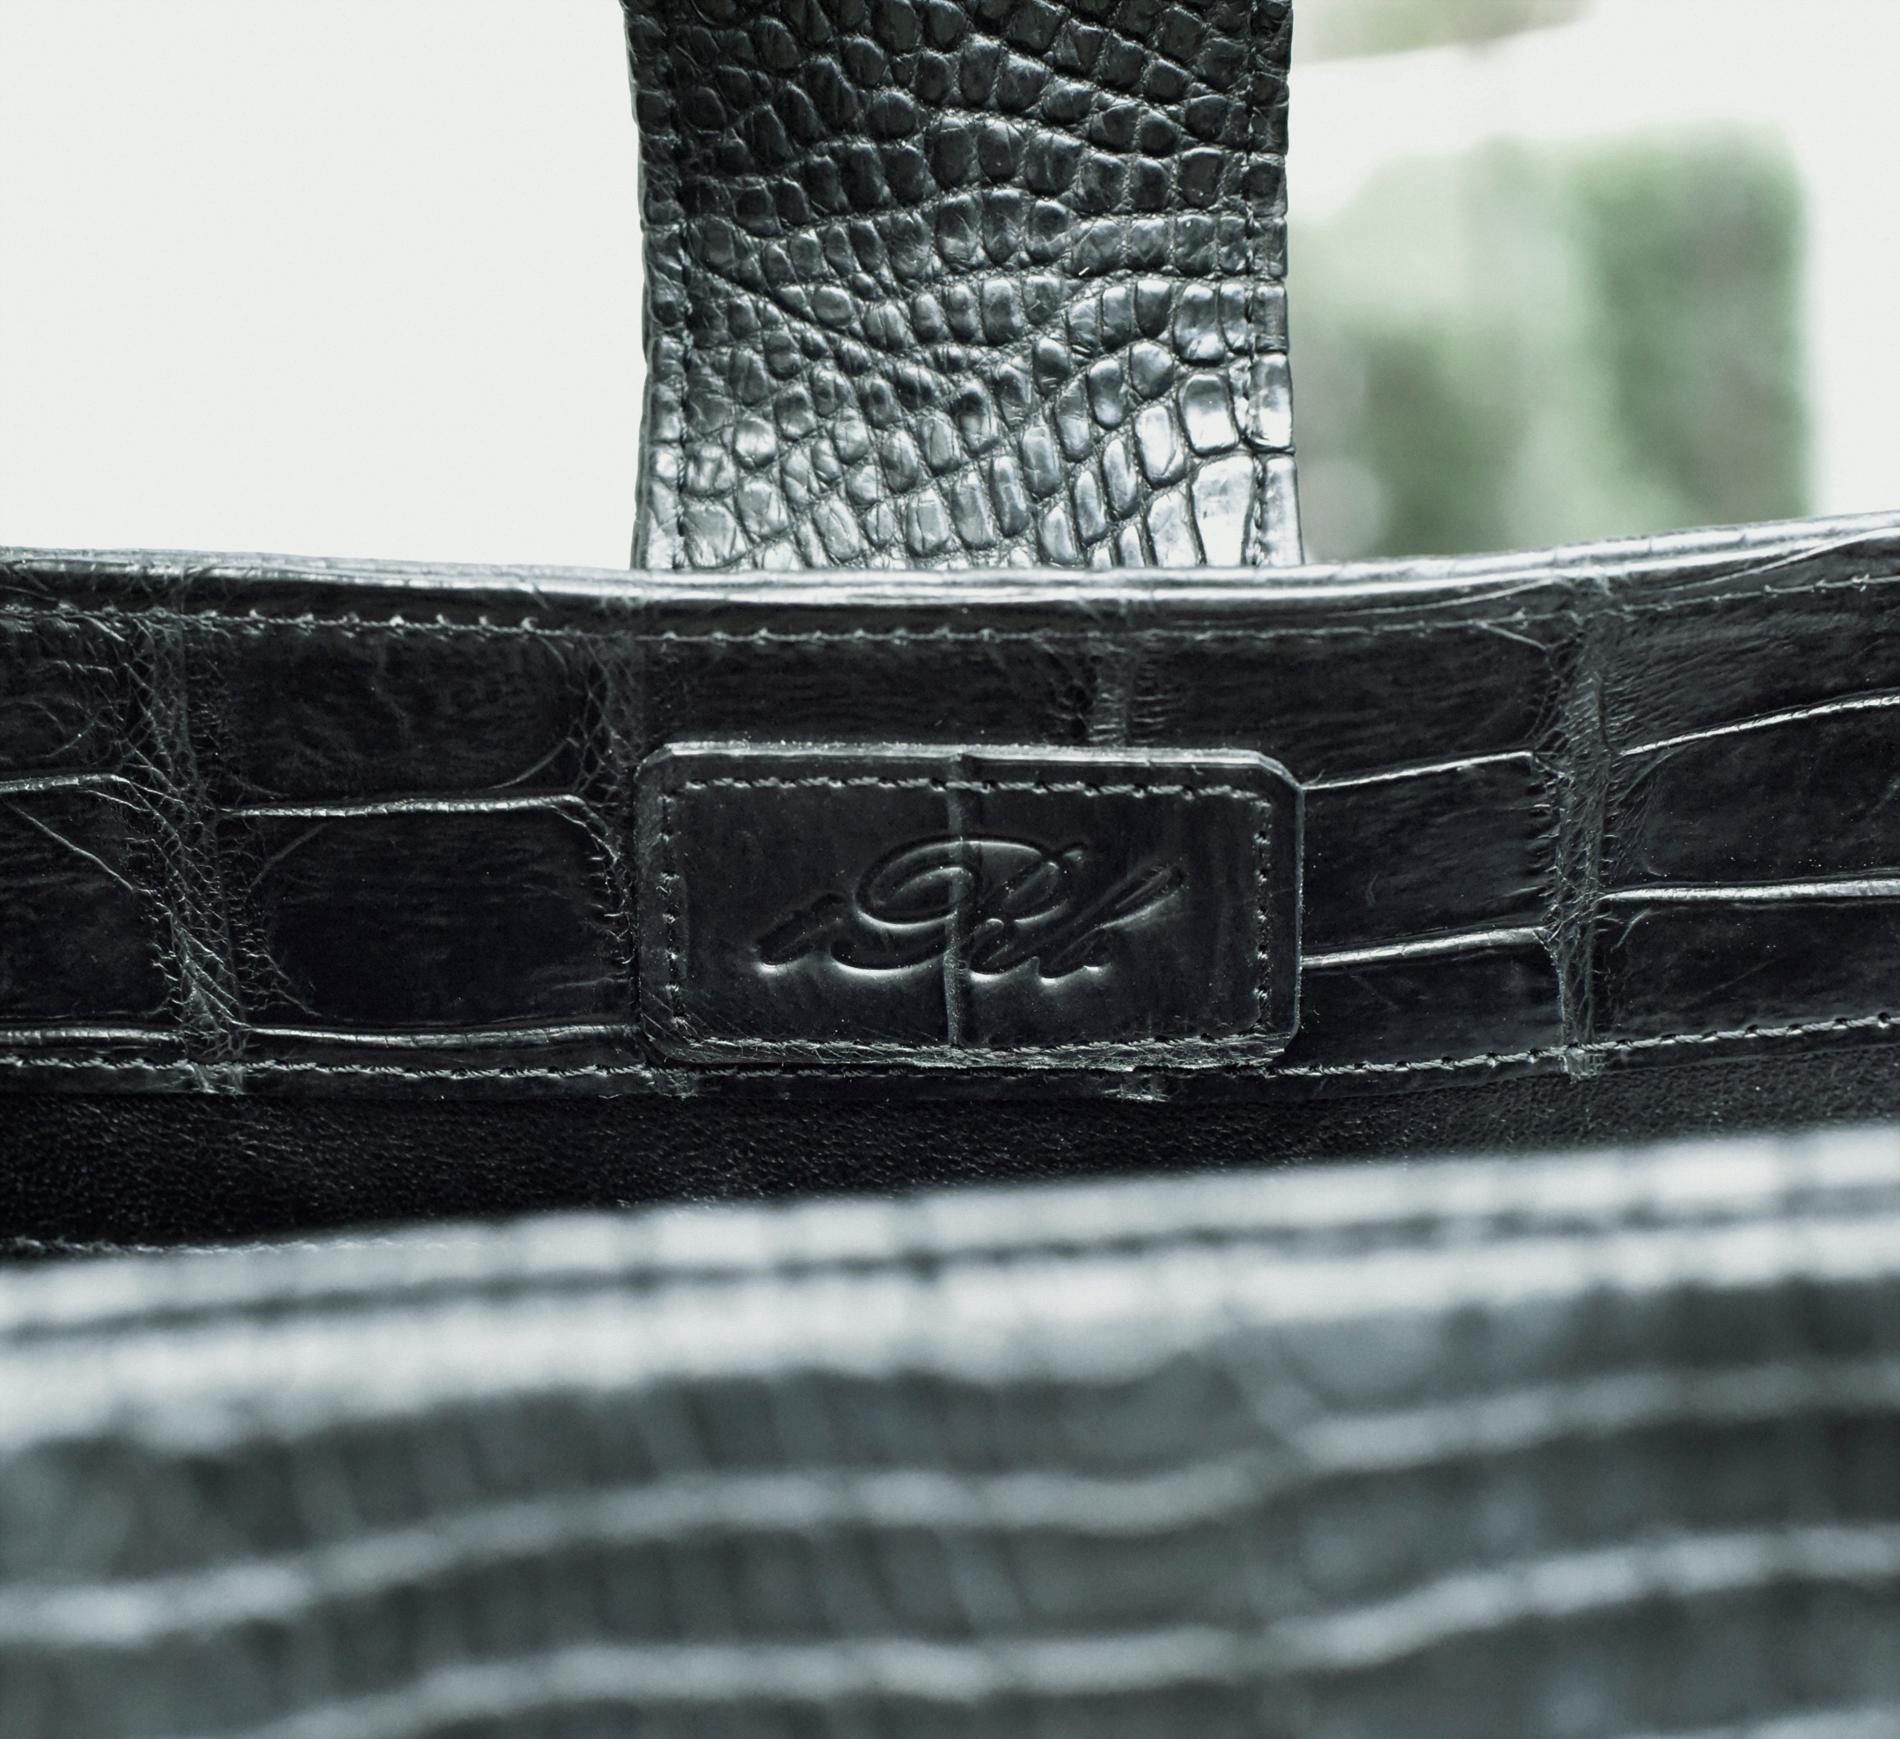 Luxuriöse mattschwarze authentische Krokodil-Handtasche!
Eine atemberaubende Tasche


Mattschwarzes authentisches Krokodil  Designer-Handtasche signiert c..R.I.  Innen gibt es eine große Reißverschlusstasche, eine kleine Handytasche und eine größere